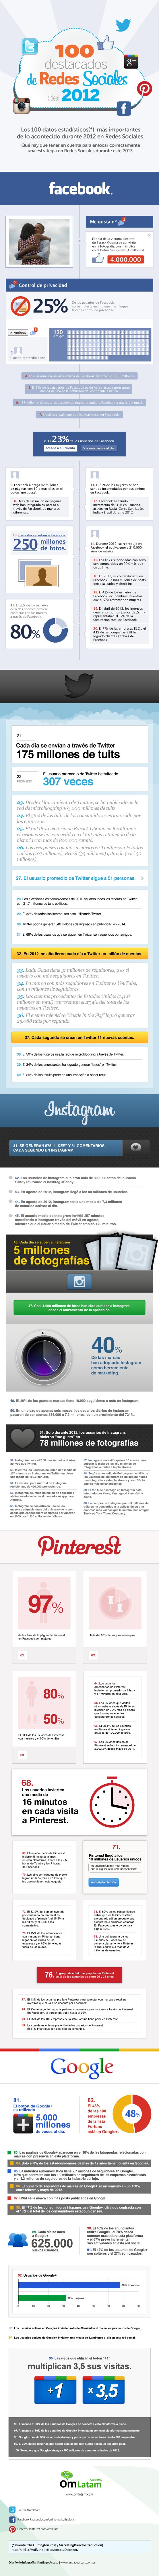 infografia_redessociales